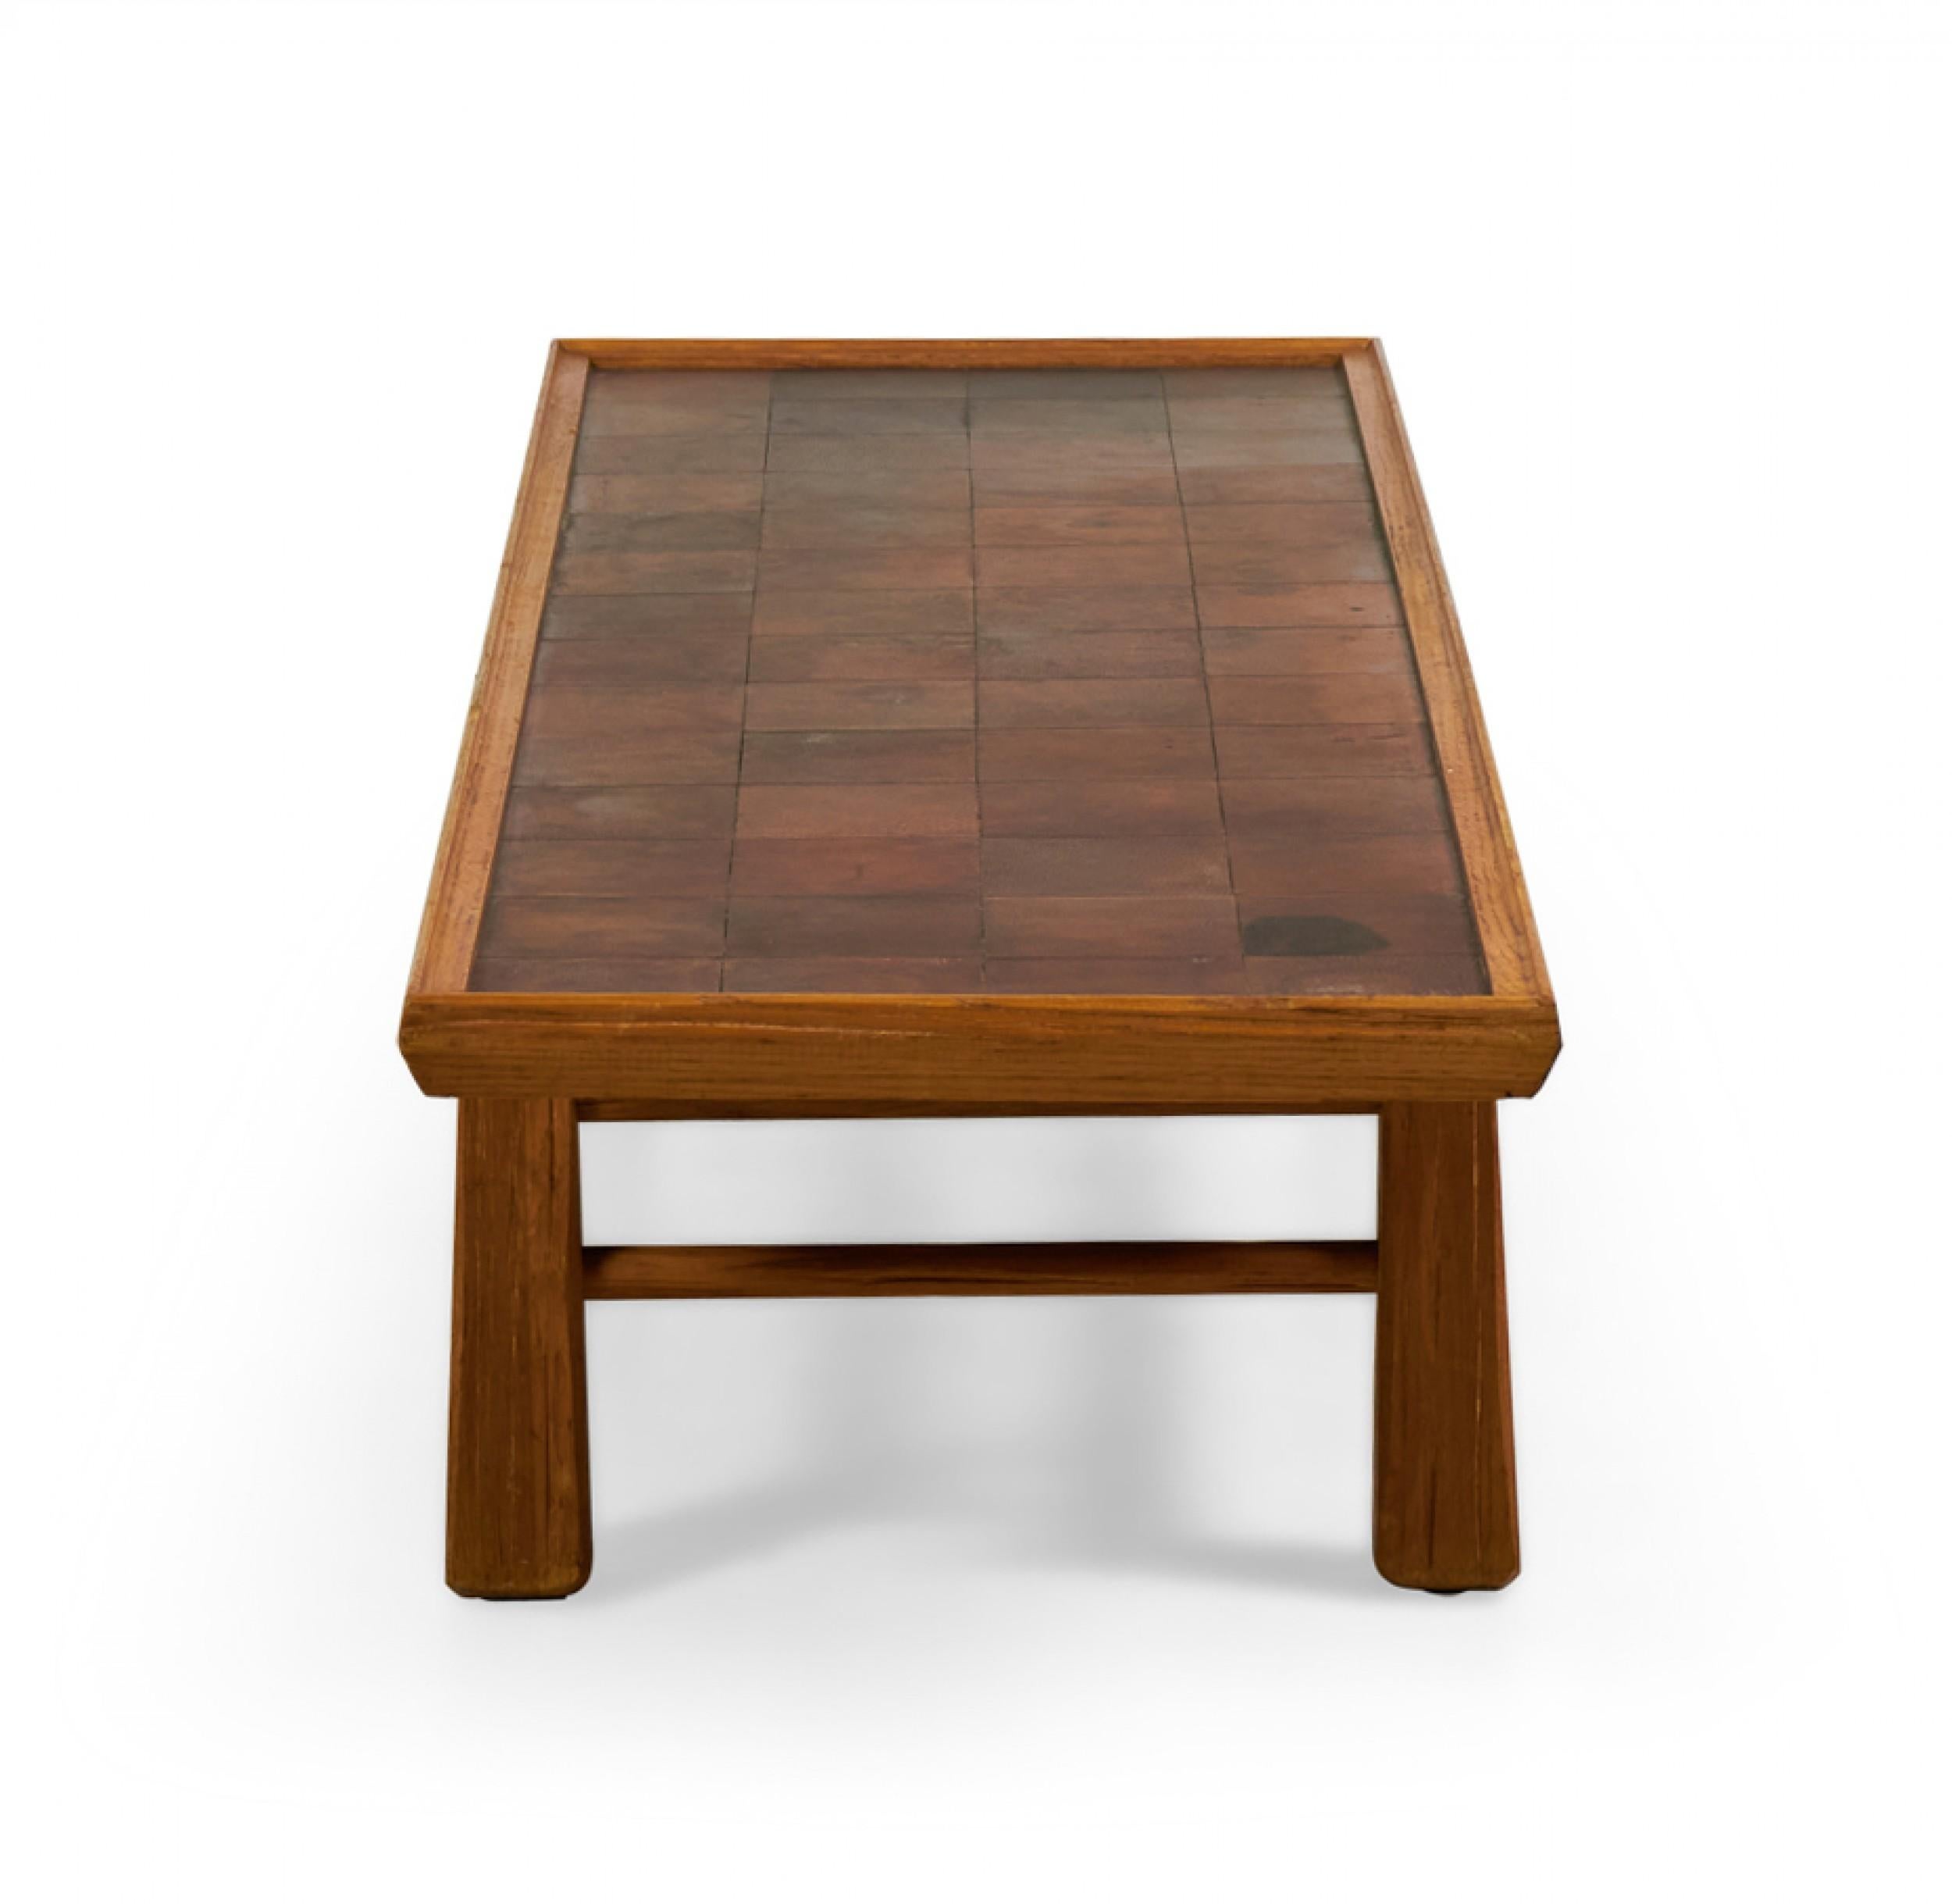 Table basse rectangulaire en chêne, de style rustique américain du milieu du siècle (circa 1950), avec un plateau en patchwork de cuir brun reposant sur quatre pieds rustiques avec une base en forme de civière. (BRANDT RANCH, TEXAS)